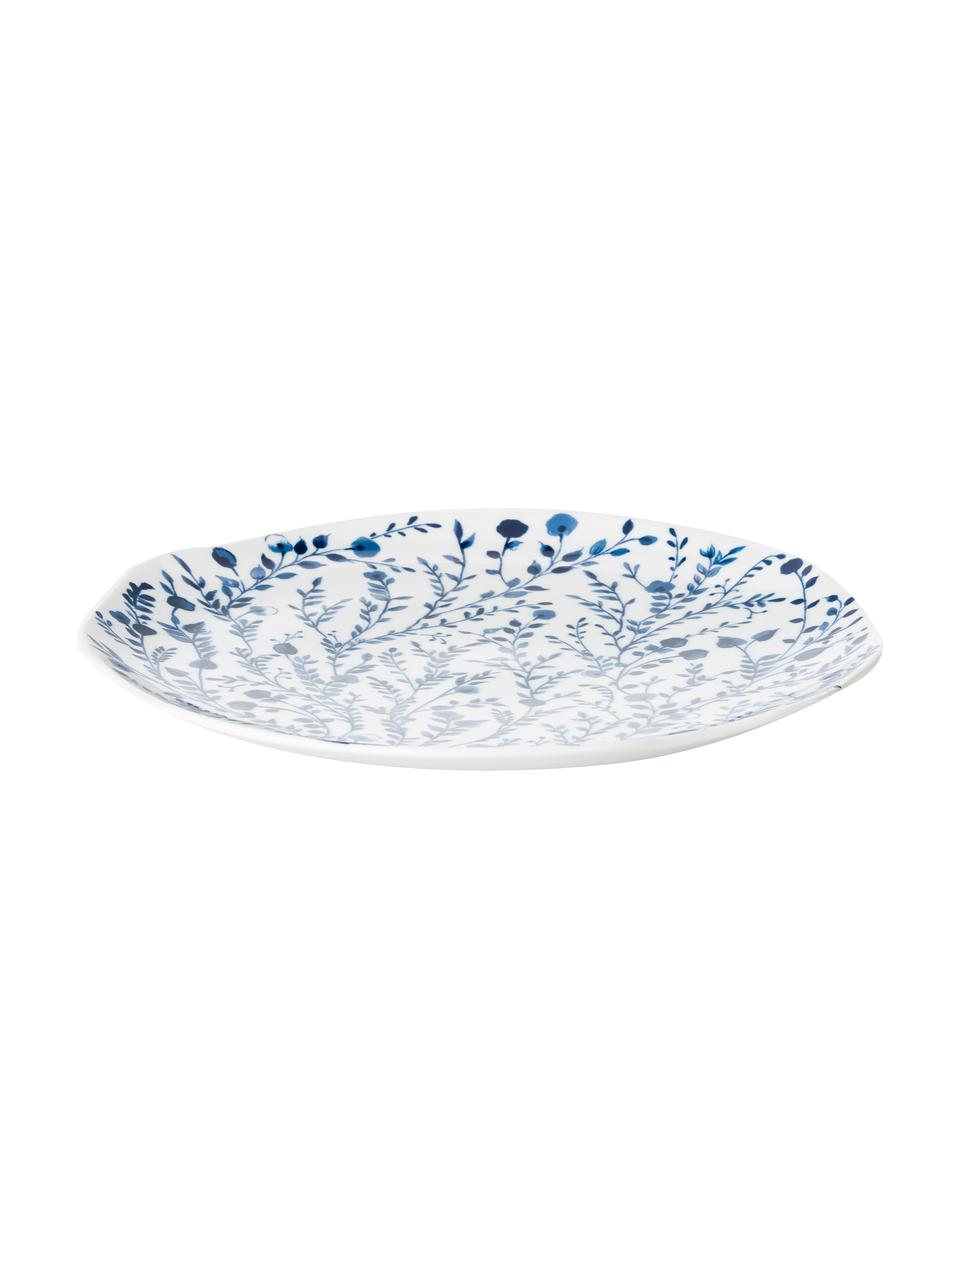 Gemusterte Speiseteller Vassoio in Weiß/Blau, 6er-Set, Porzellan, Blau, Weiß, Ø 27 cm